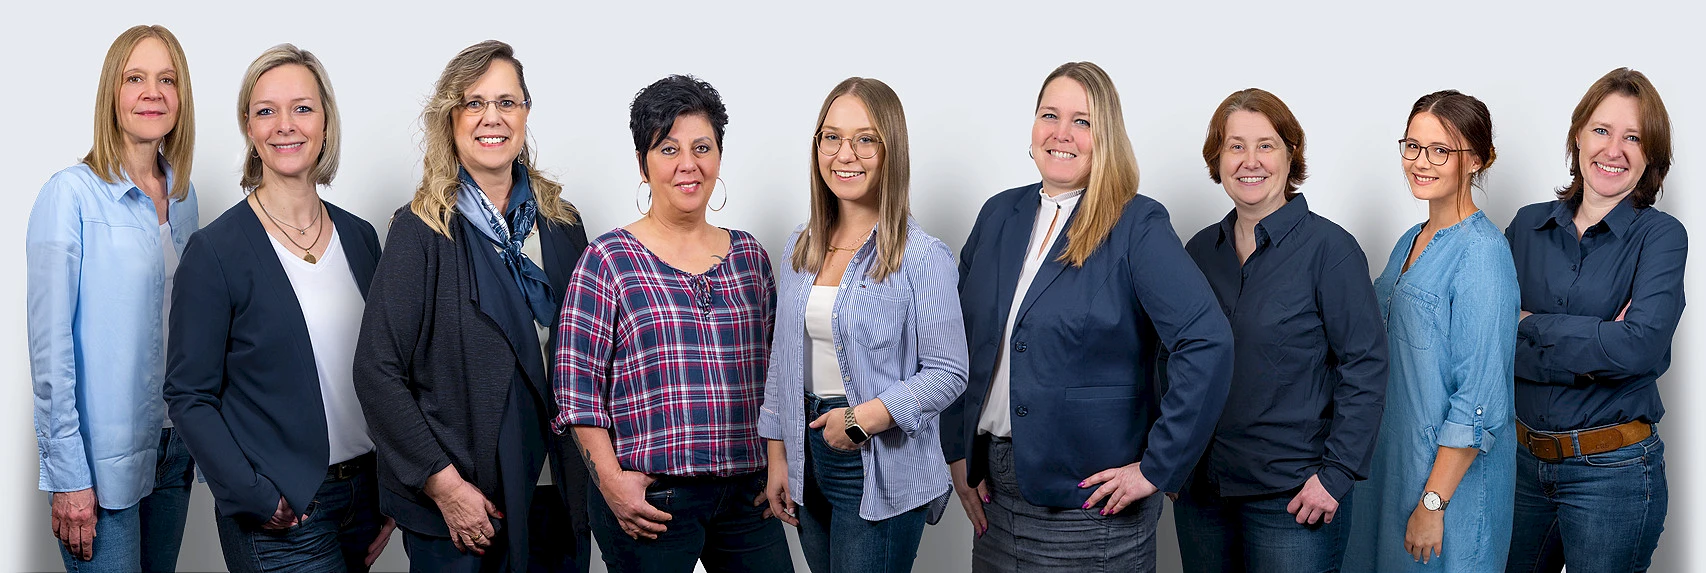 Gruppenbild des Büroteams (6 Frauen)